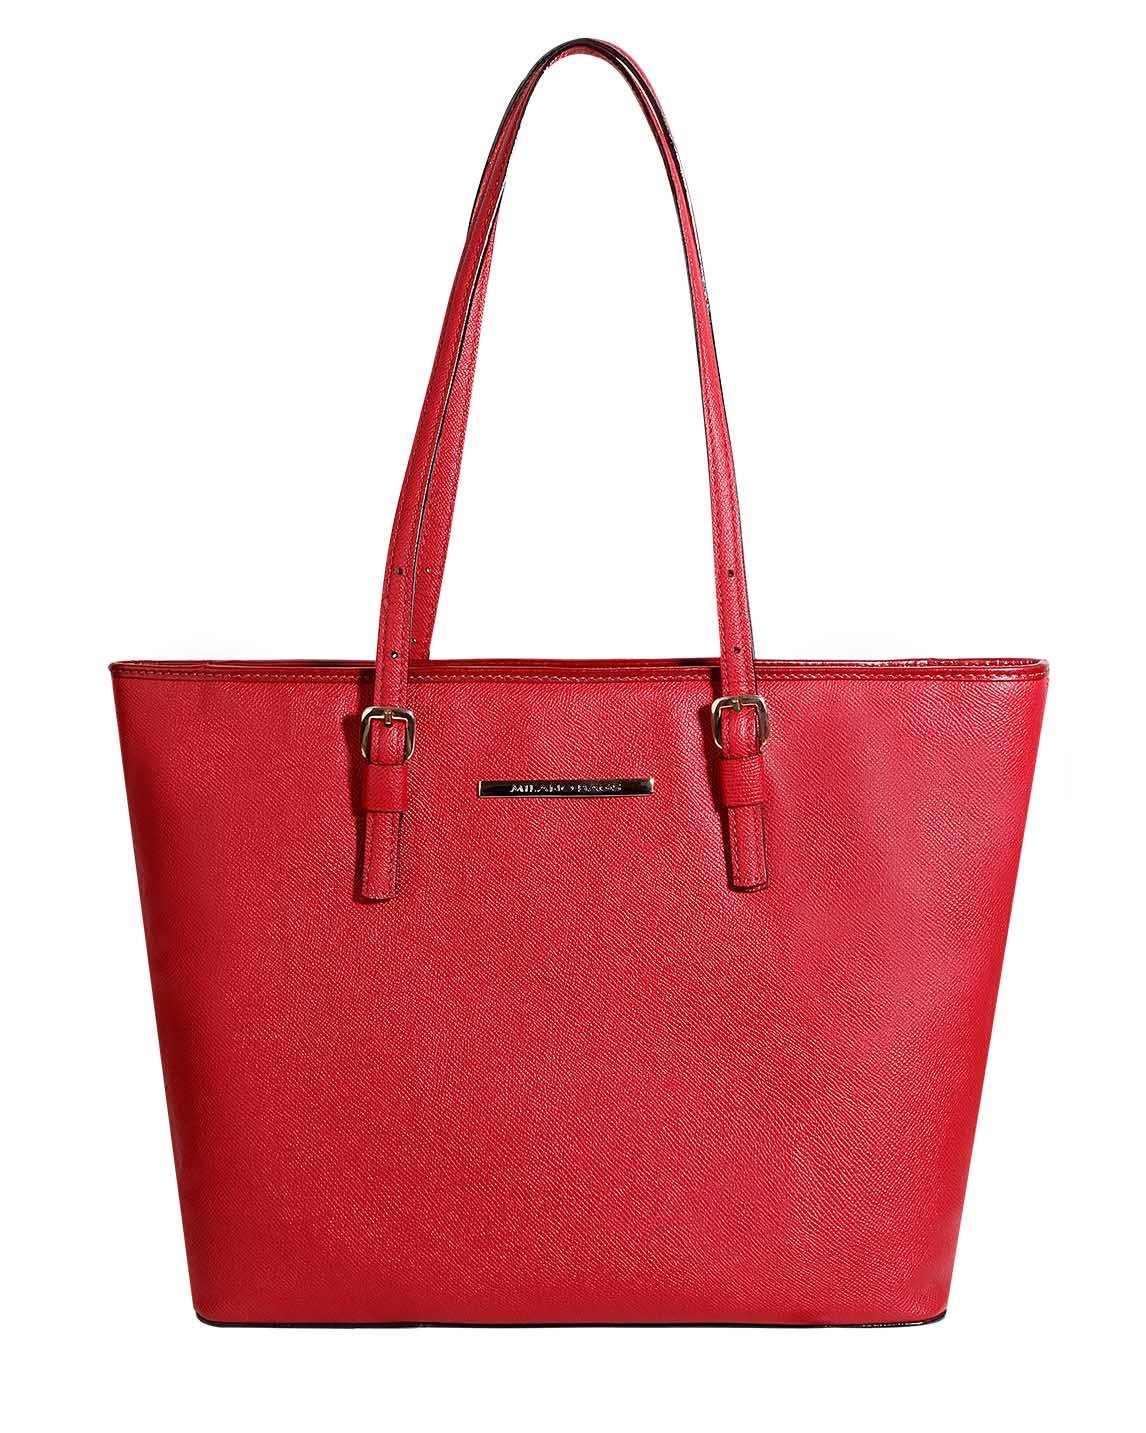 Carteras Tote Bags DS-2877 Color Rojo